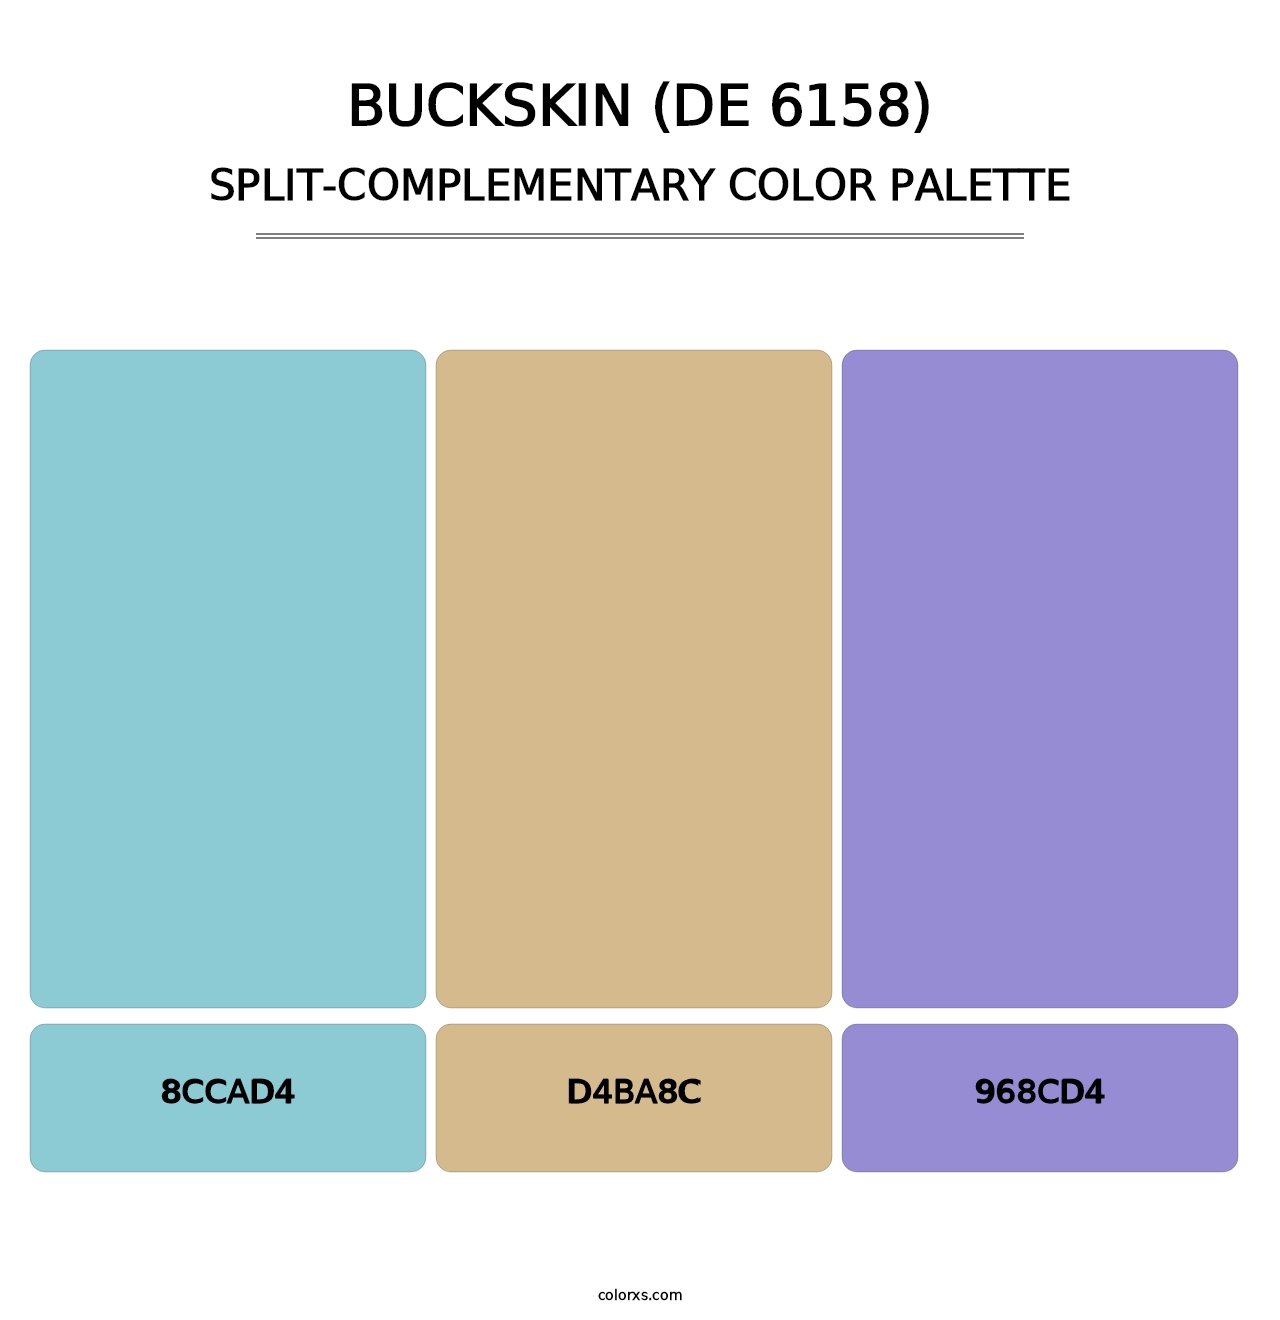 Buckskin (DE 6158) - Split-Complementary Color Palette